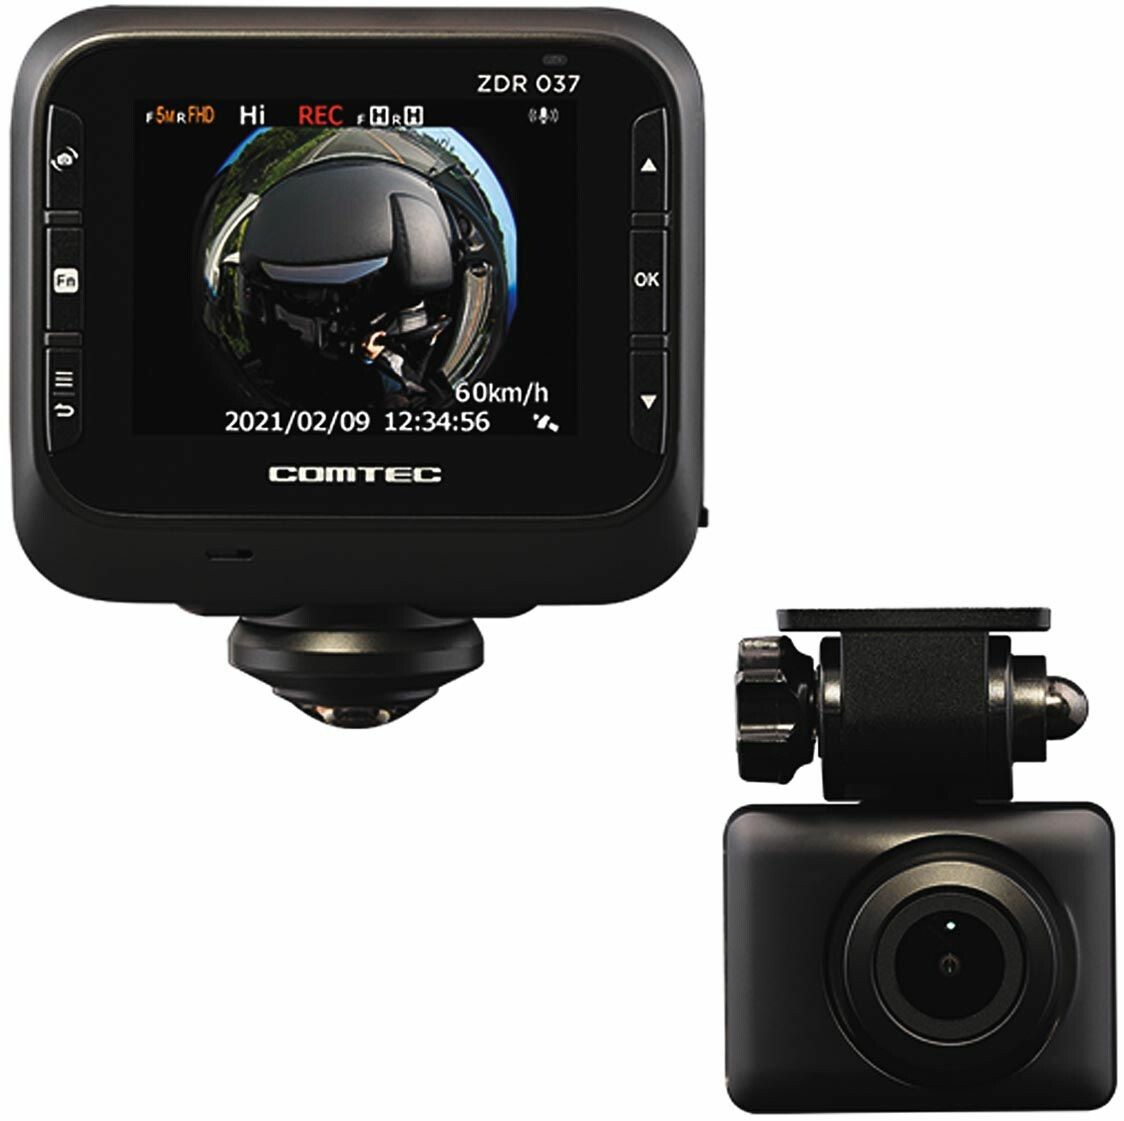 コムテック、360度カメラ用いた2カメラ型ドライブレコーダー「ZDR037」発売